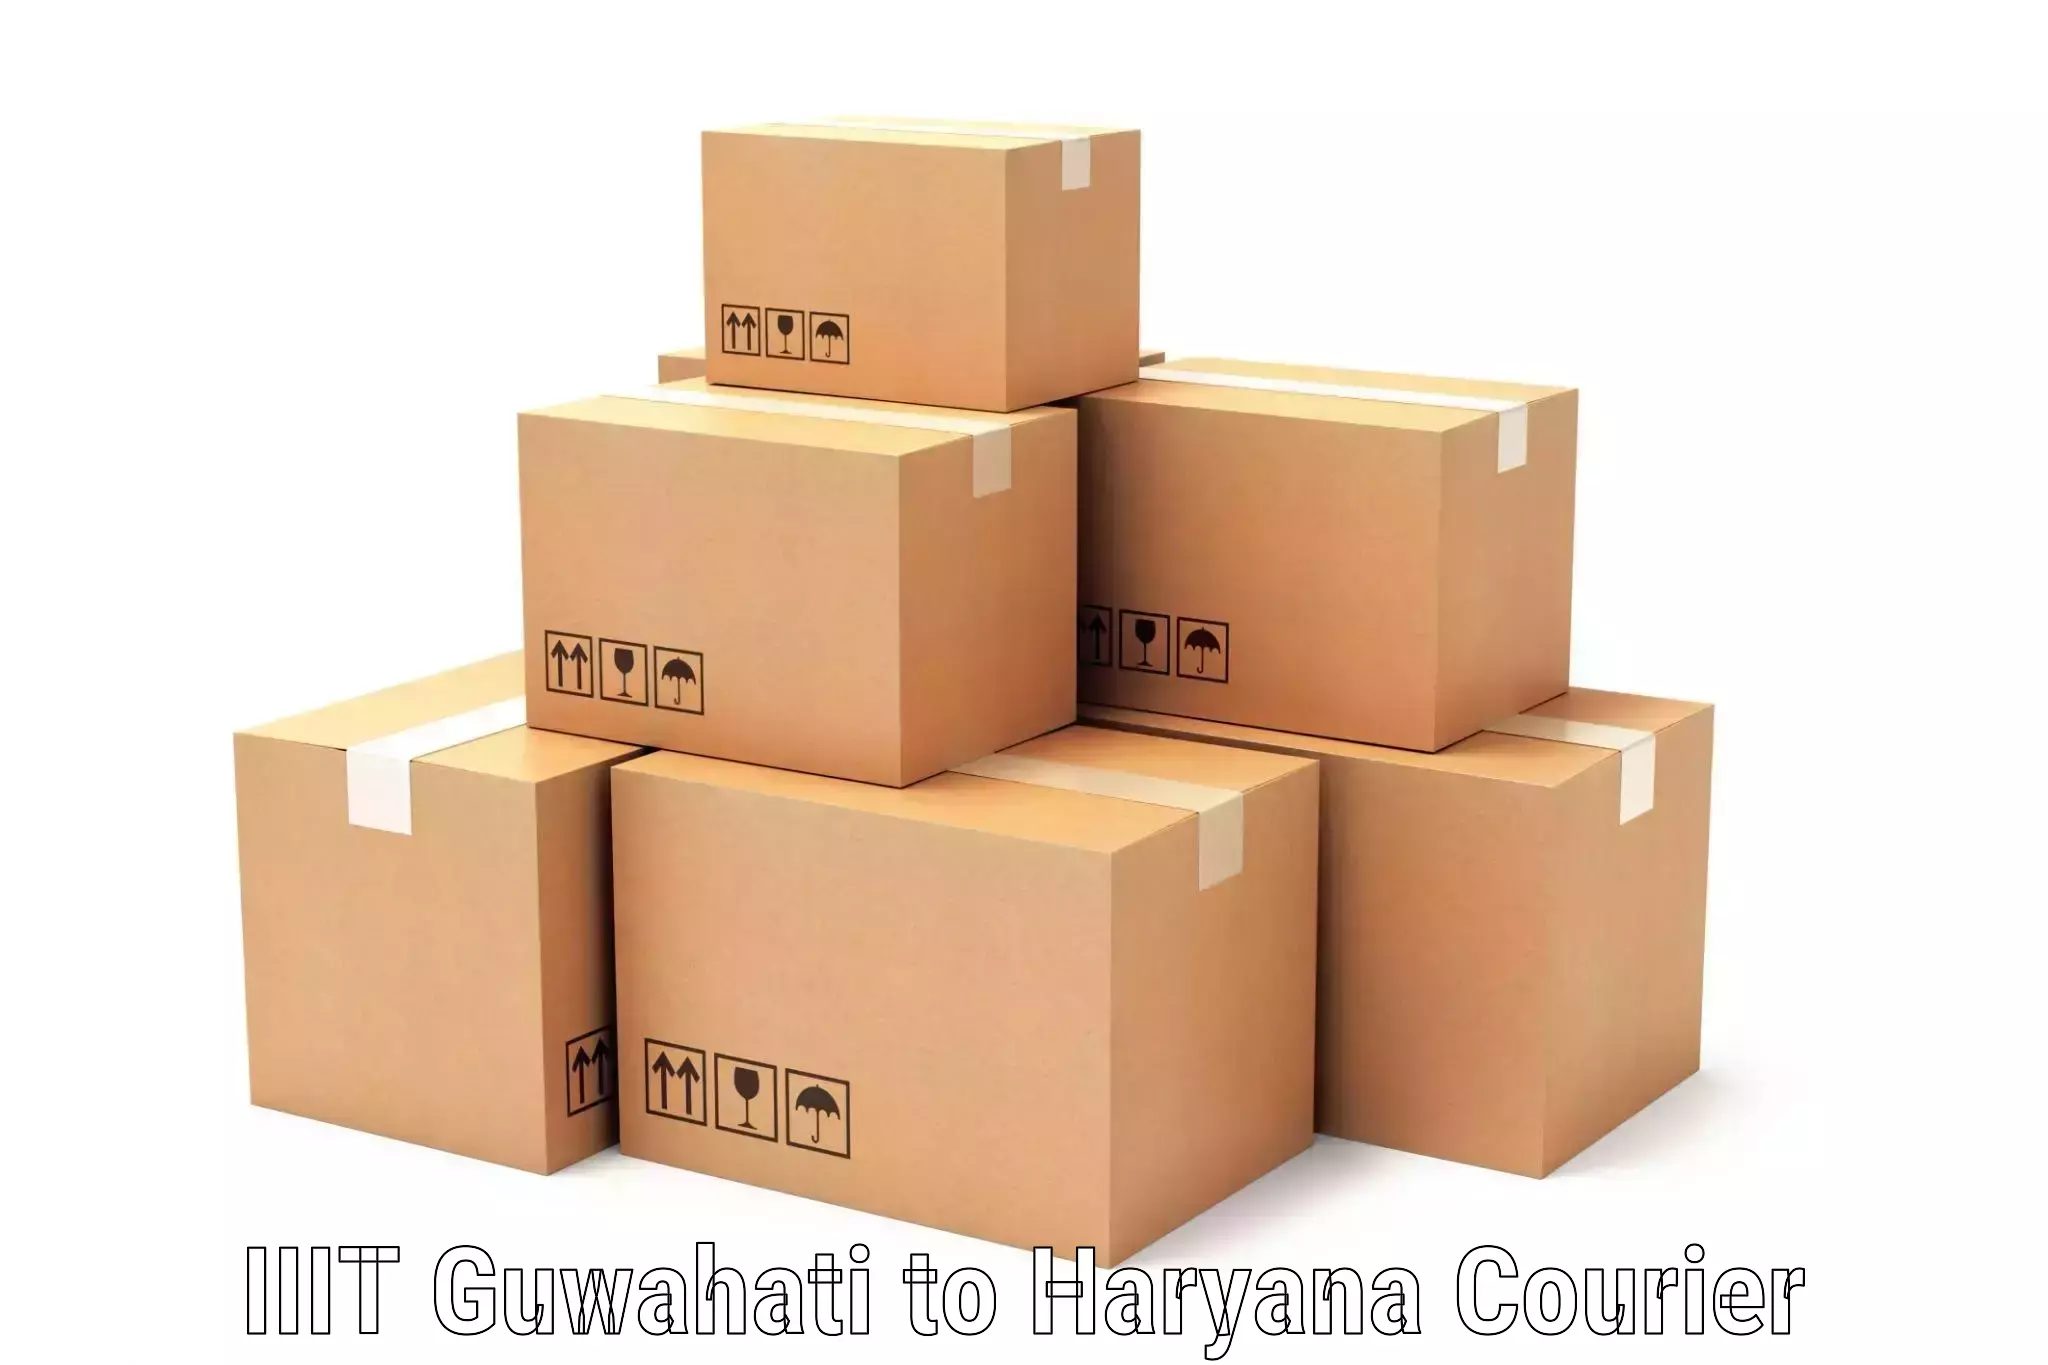 Courier service efficiency IIIT Guwahati to Bahadurgarh